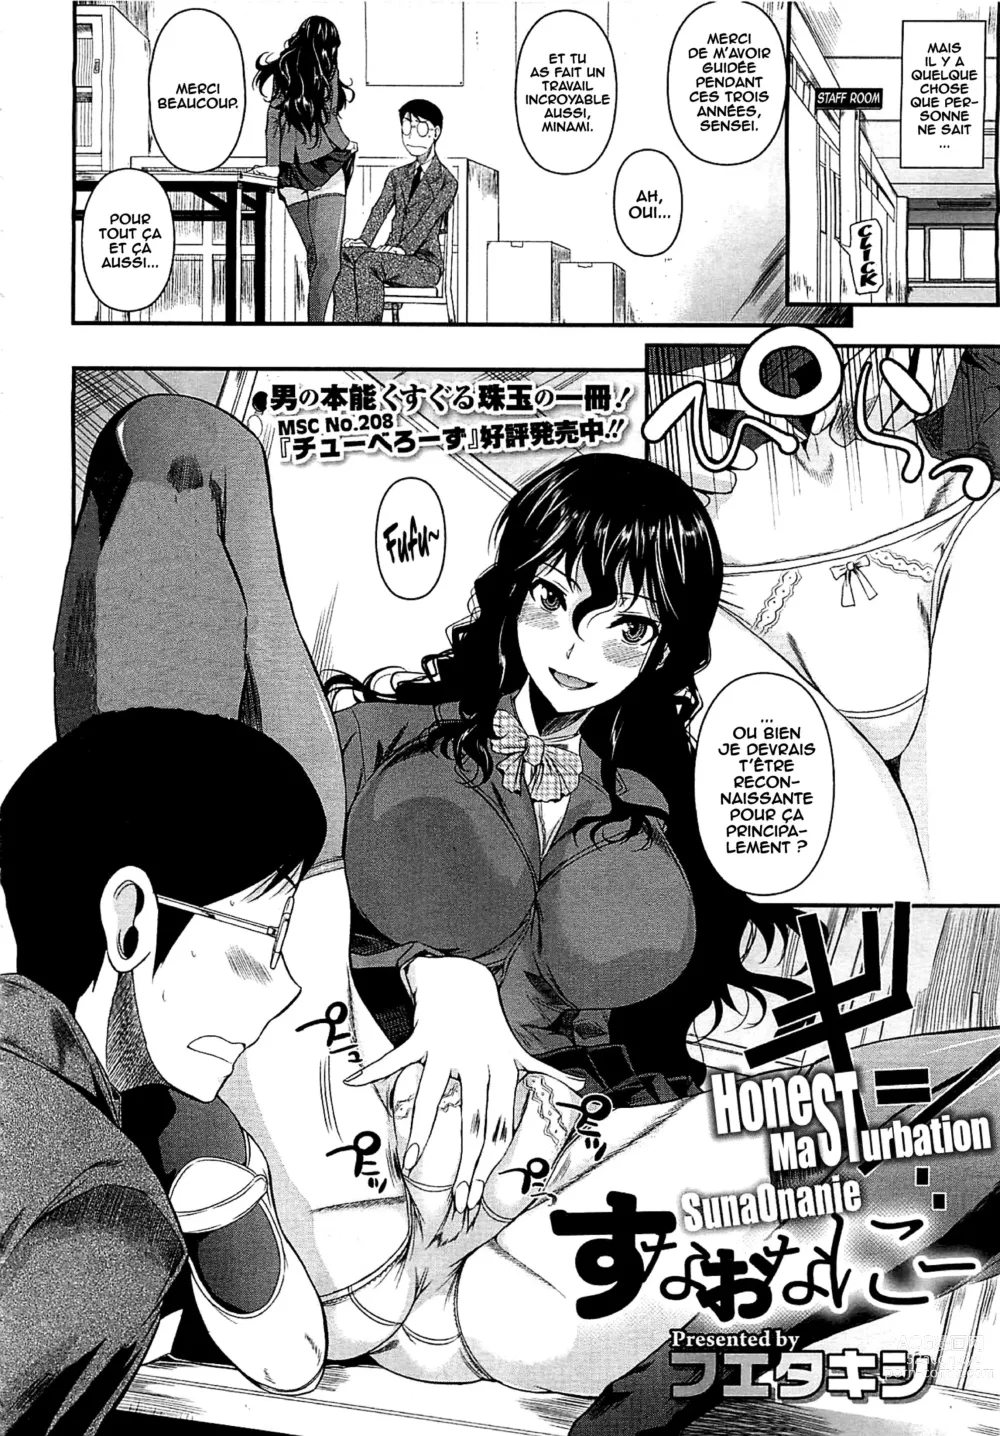 Page 2 of manga Suna Onanie